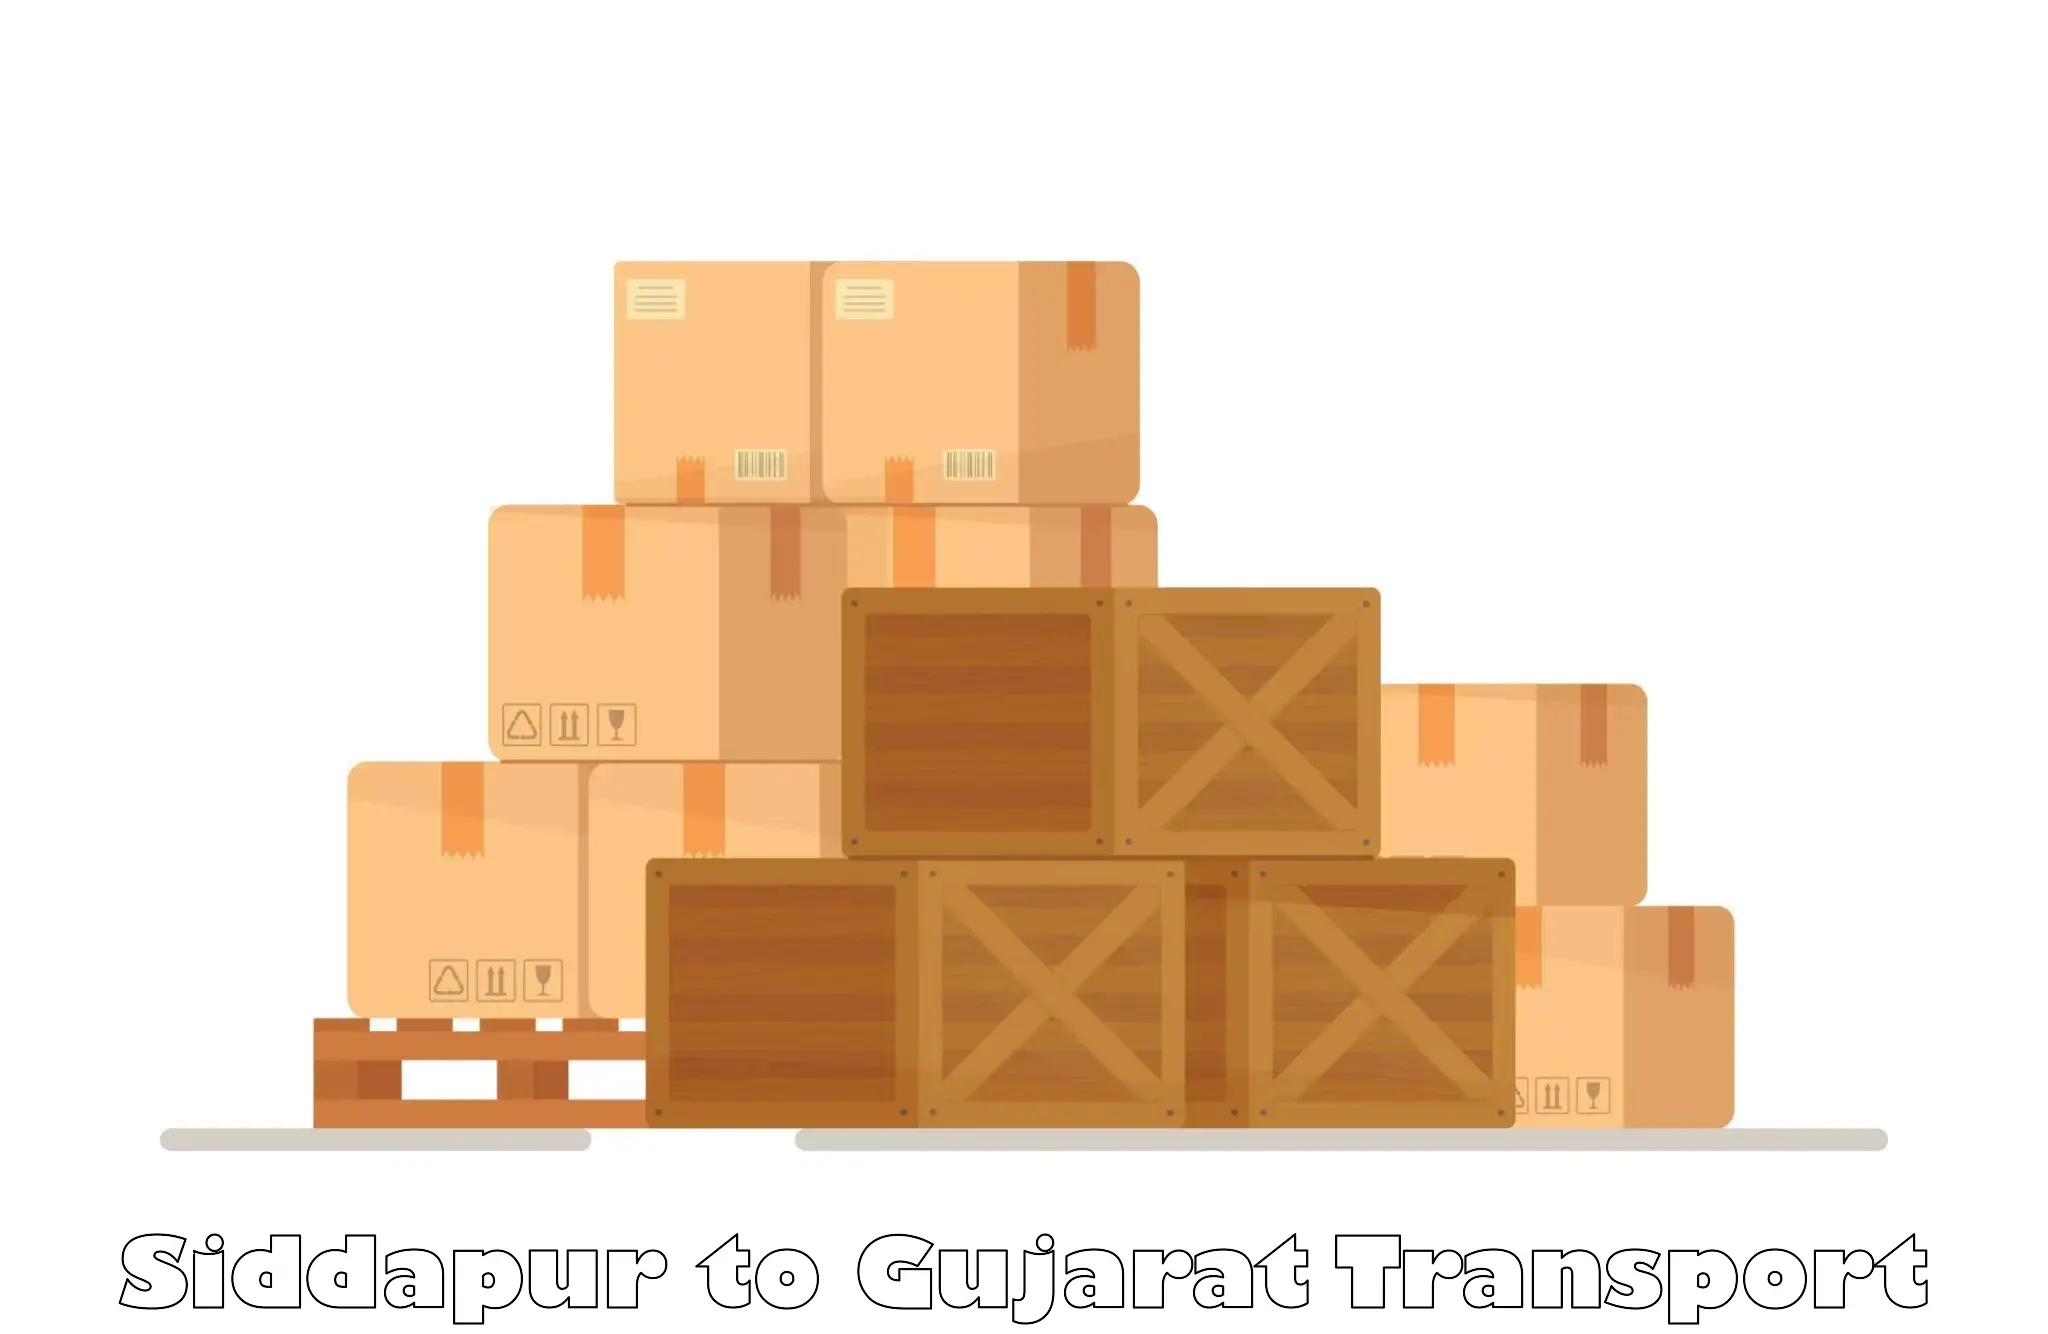 Cargo train transport services Siddapur to IIT Gandhi Nagar